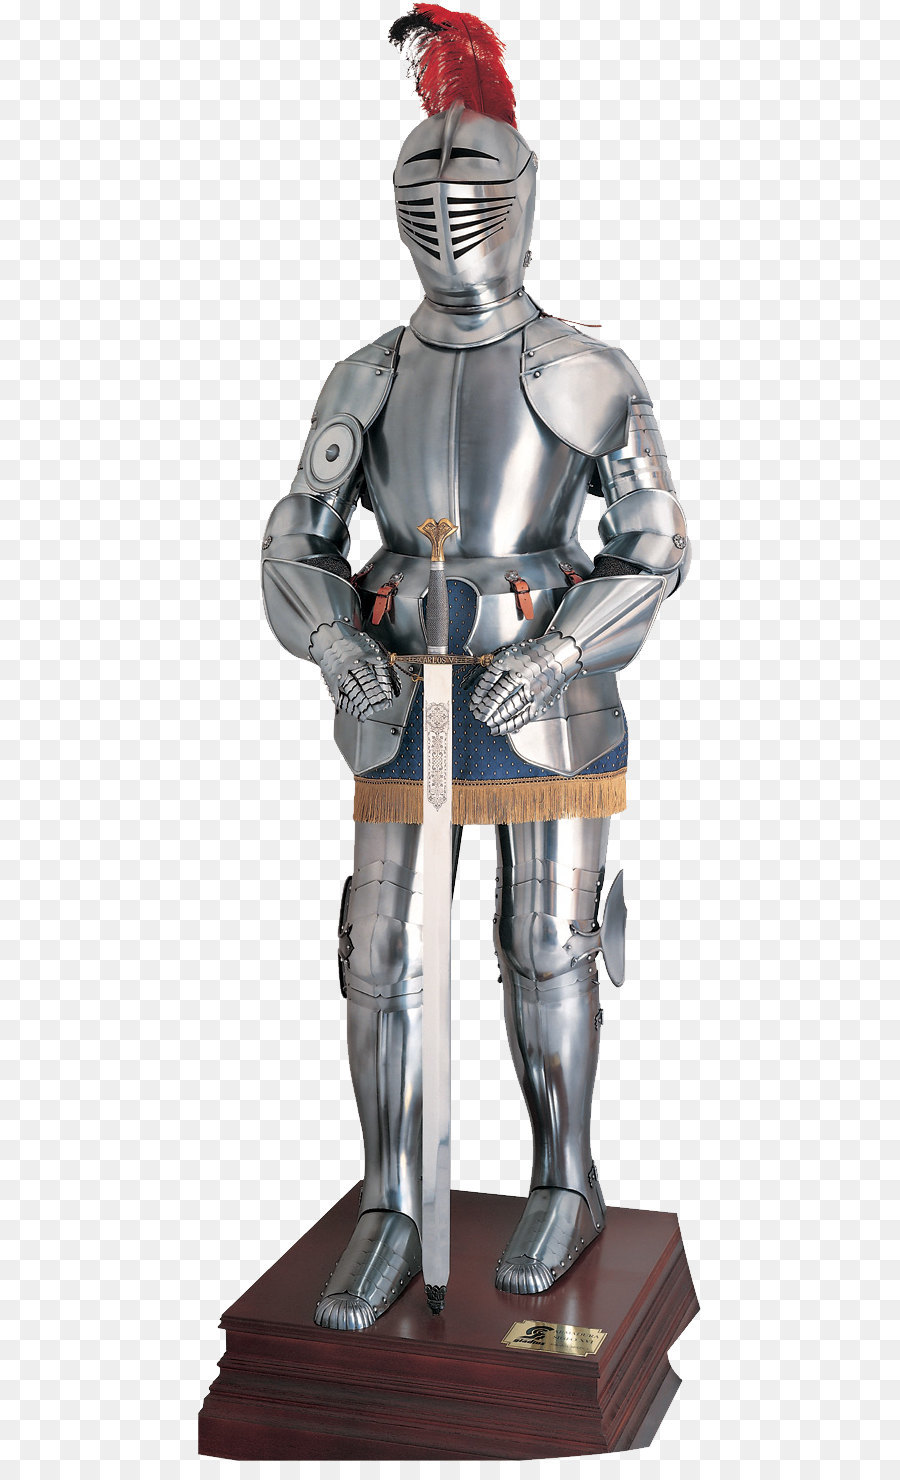 Tấm áo giáp Cơ thể áo giáp thời Trung Cổ Hiệp sĩ - hiệp sĩ áo giáp PNG